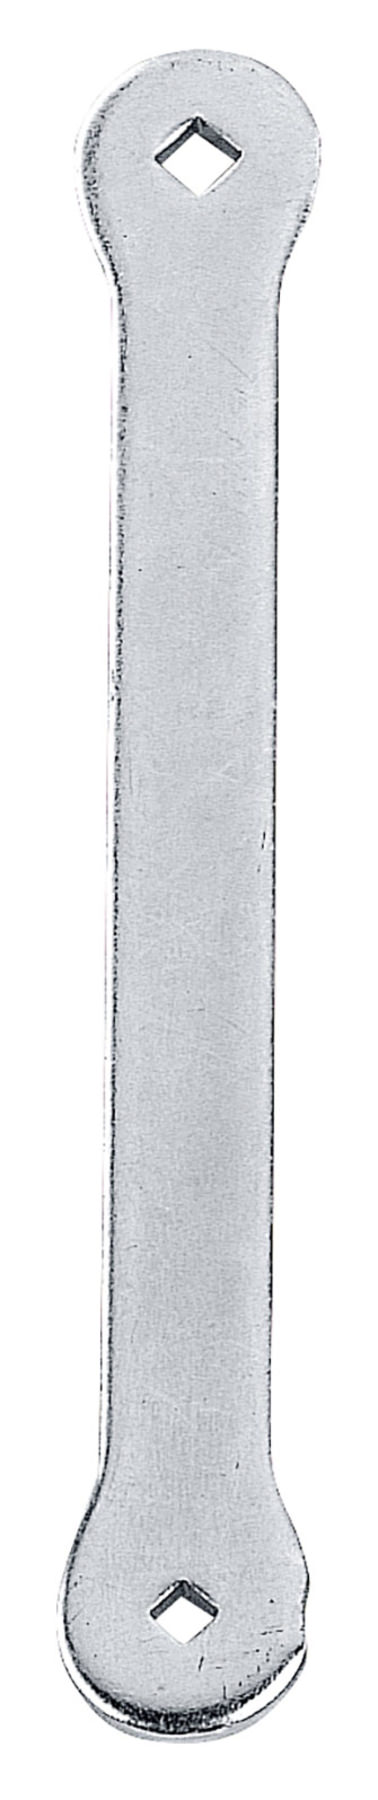 Ventilspiel Einstell-Schraube 3mm Vierkant 4-kant Werkzeug Ventil-Einstellen 